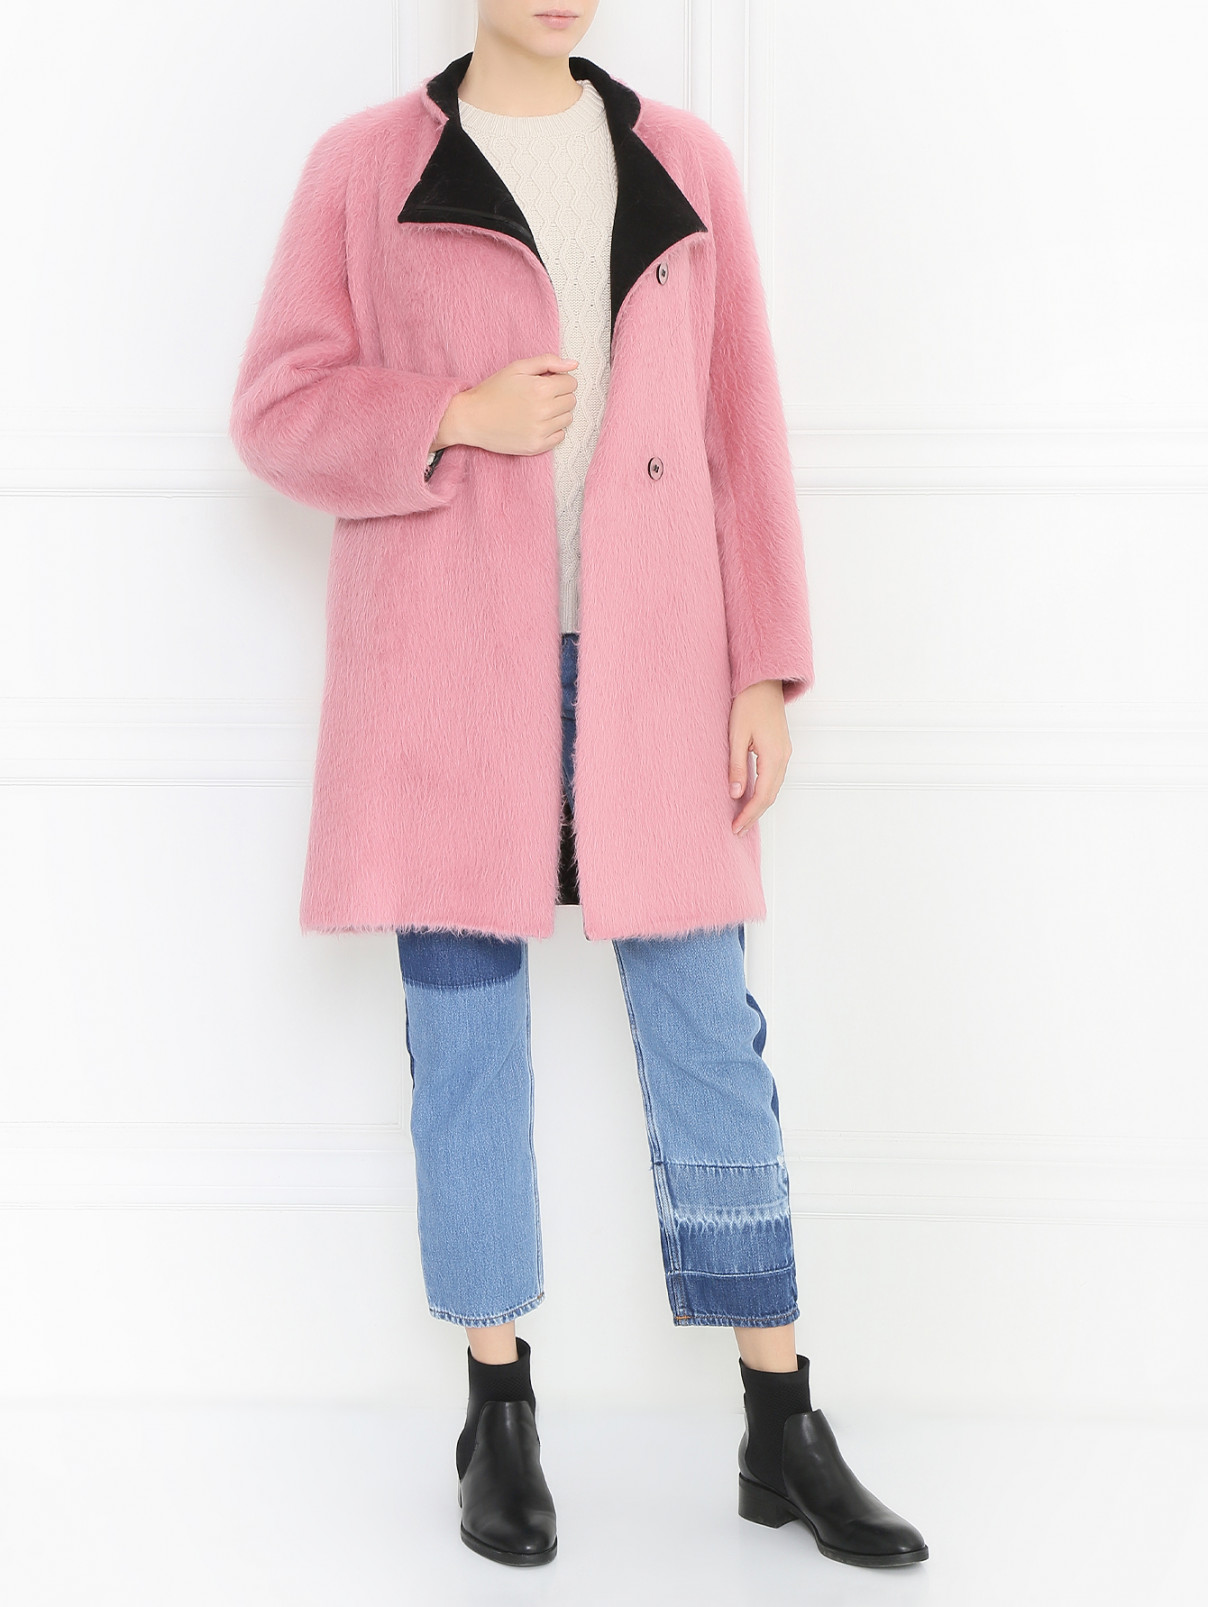 Пальто свободного кроя из шерсти Sportmax  –  Модель Общий вид  – Цвет:  Розовый